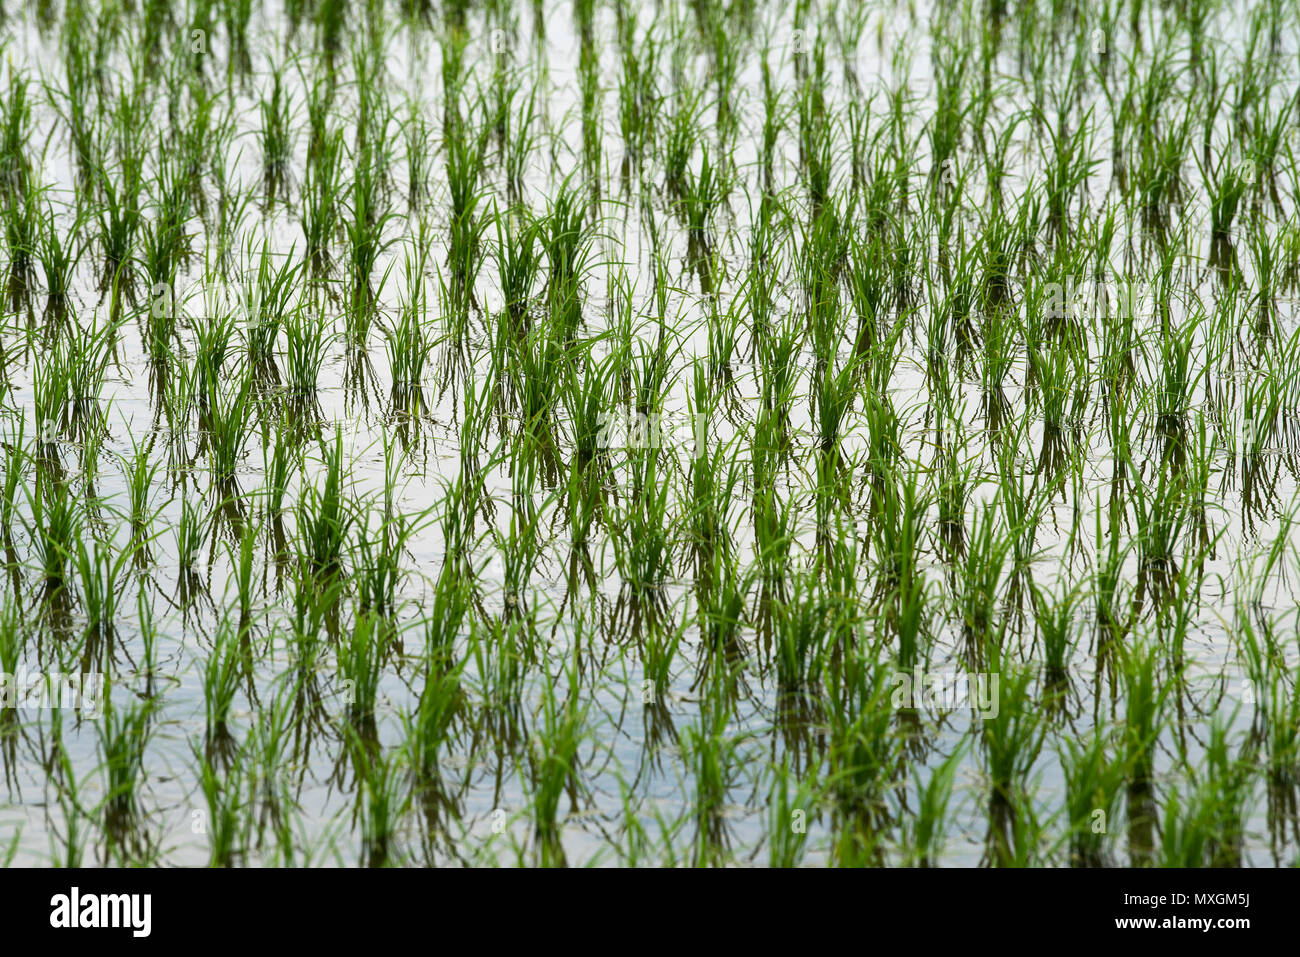 Juni 3, 2018 - Ein vor kurzem gepflanzt Reisfeld während Yuki Saiden O-taue Matsuri, reisanbau Zeremonie und Festival in Okazaki, Japan. Das Festival findet an einem speziellen Reisfeld für Shinto dieties ein saiden genannt. Ähnliche Ereignisse werden während der Reis Pflanzsaison in ganz Japan statt. Während die meisten Reisanbau in Japan jetzt von Maschine, Festivalteilnehmer pflanzen Reis von Hand. Sie tragen auch traditionelle Kleidung, und führen Sie die traditionellen Gesang und Tanz. Credit: Ben Weller/LBA/Alamy leben Nachrichten Stockfoto